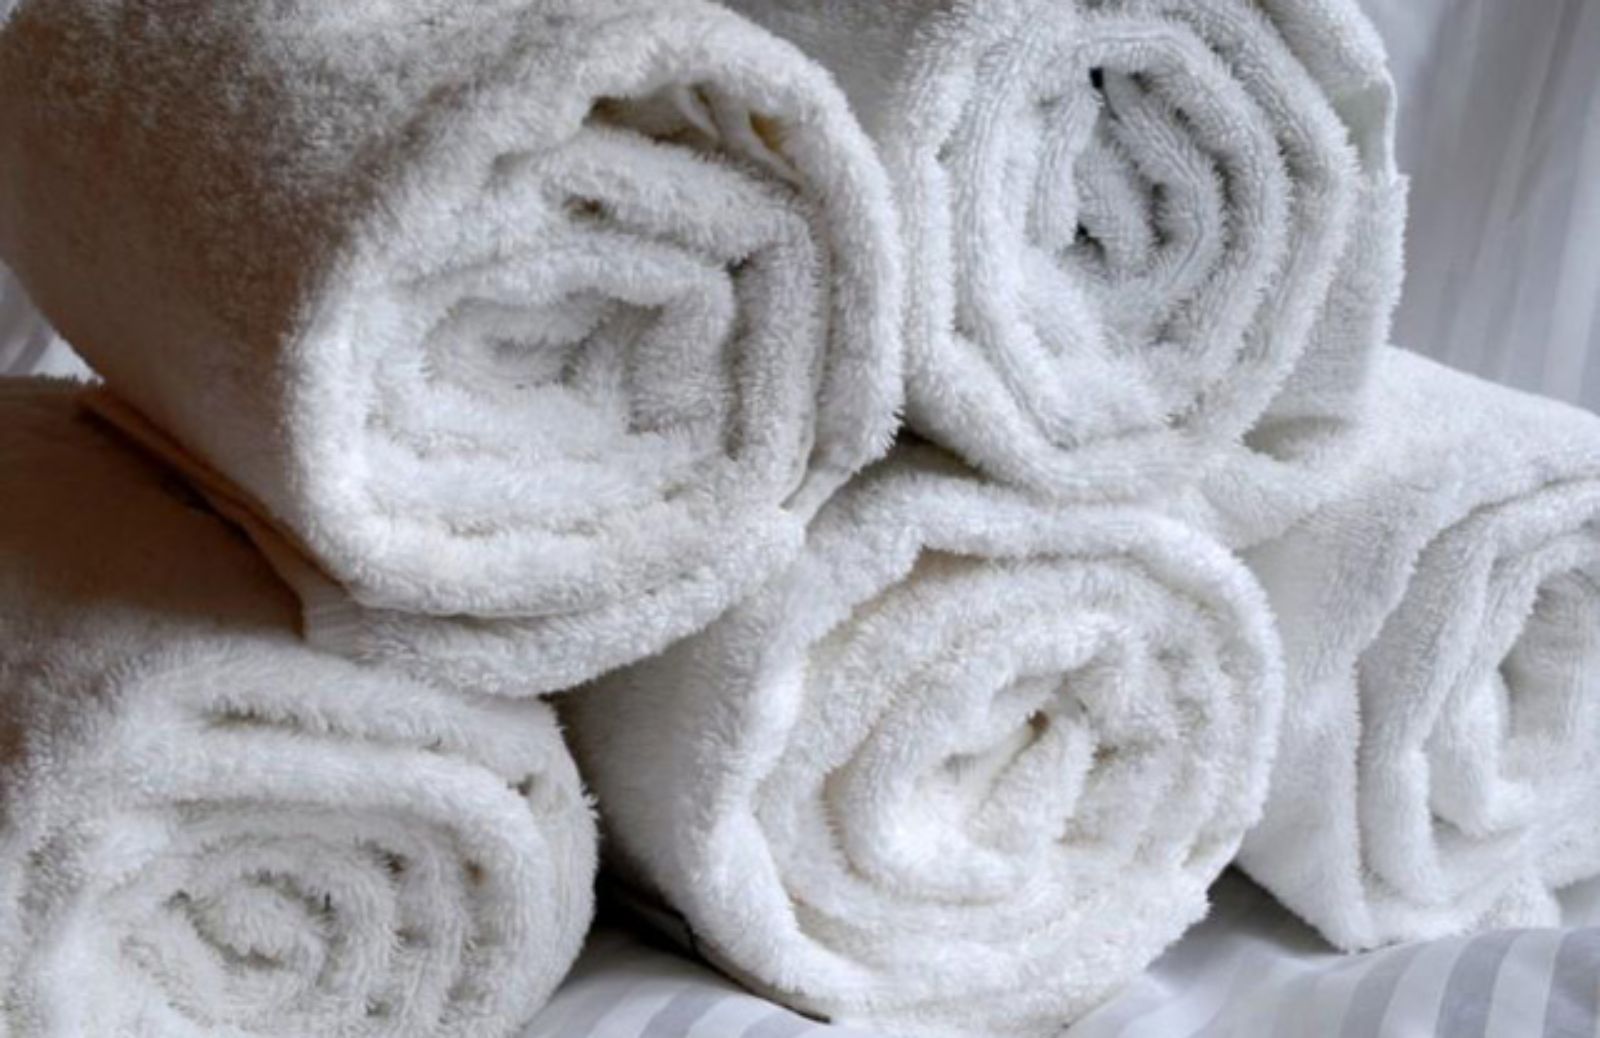 I 5 modi per riutilizzare gli asciugamani